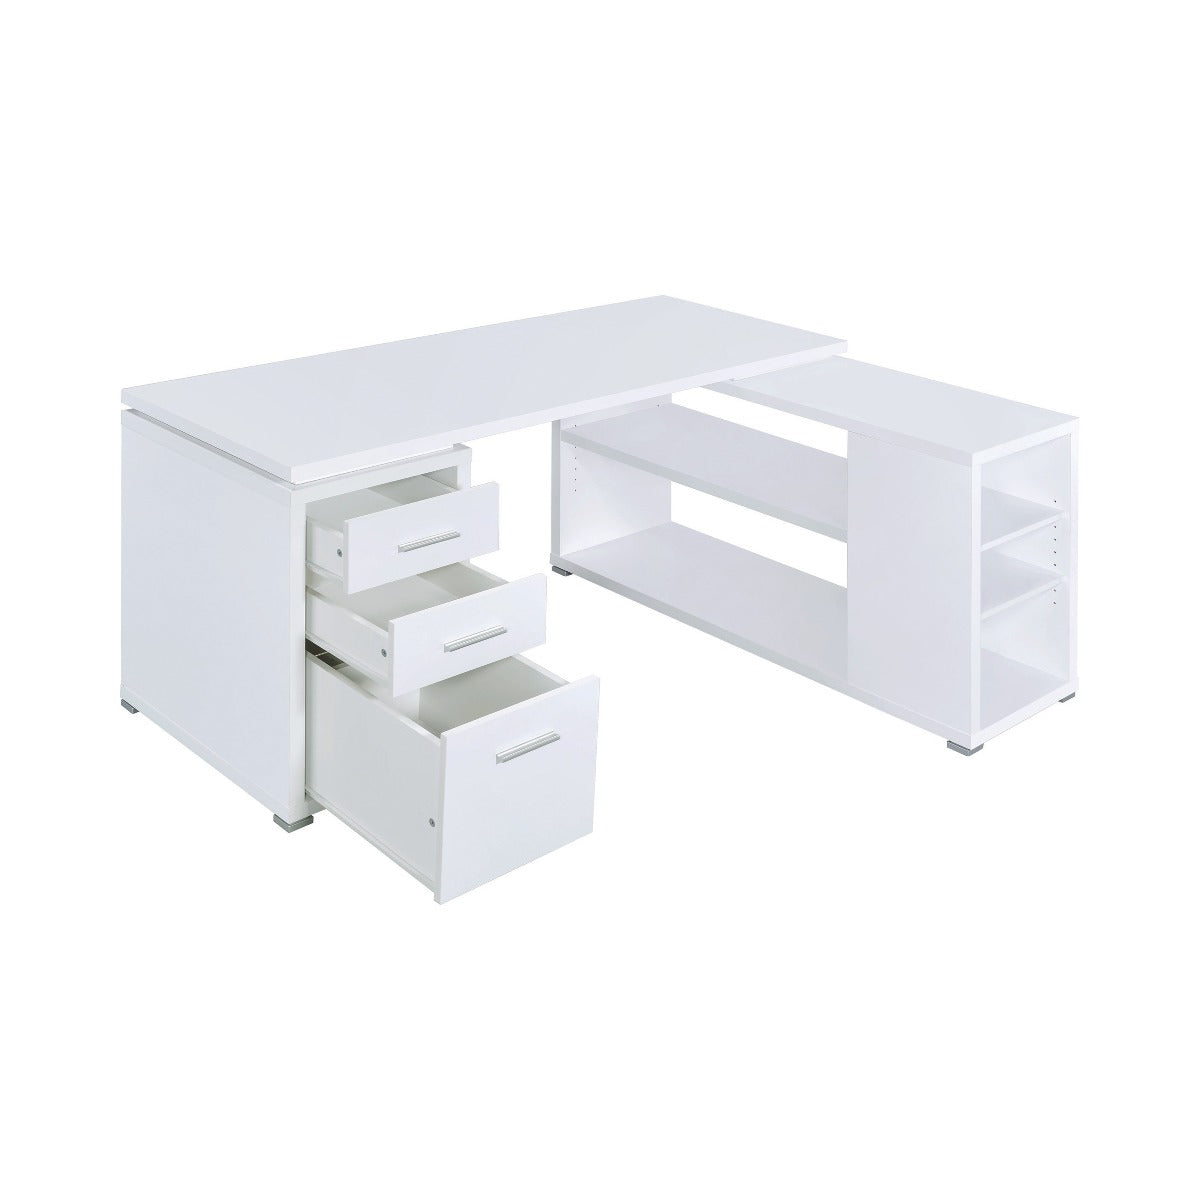 Yvette Desk 800516 - White